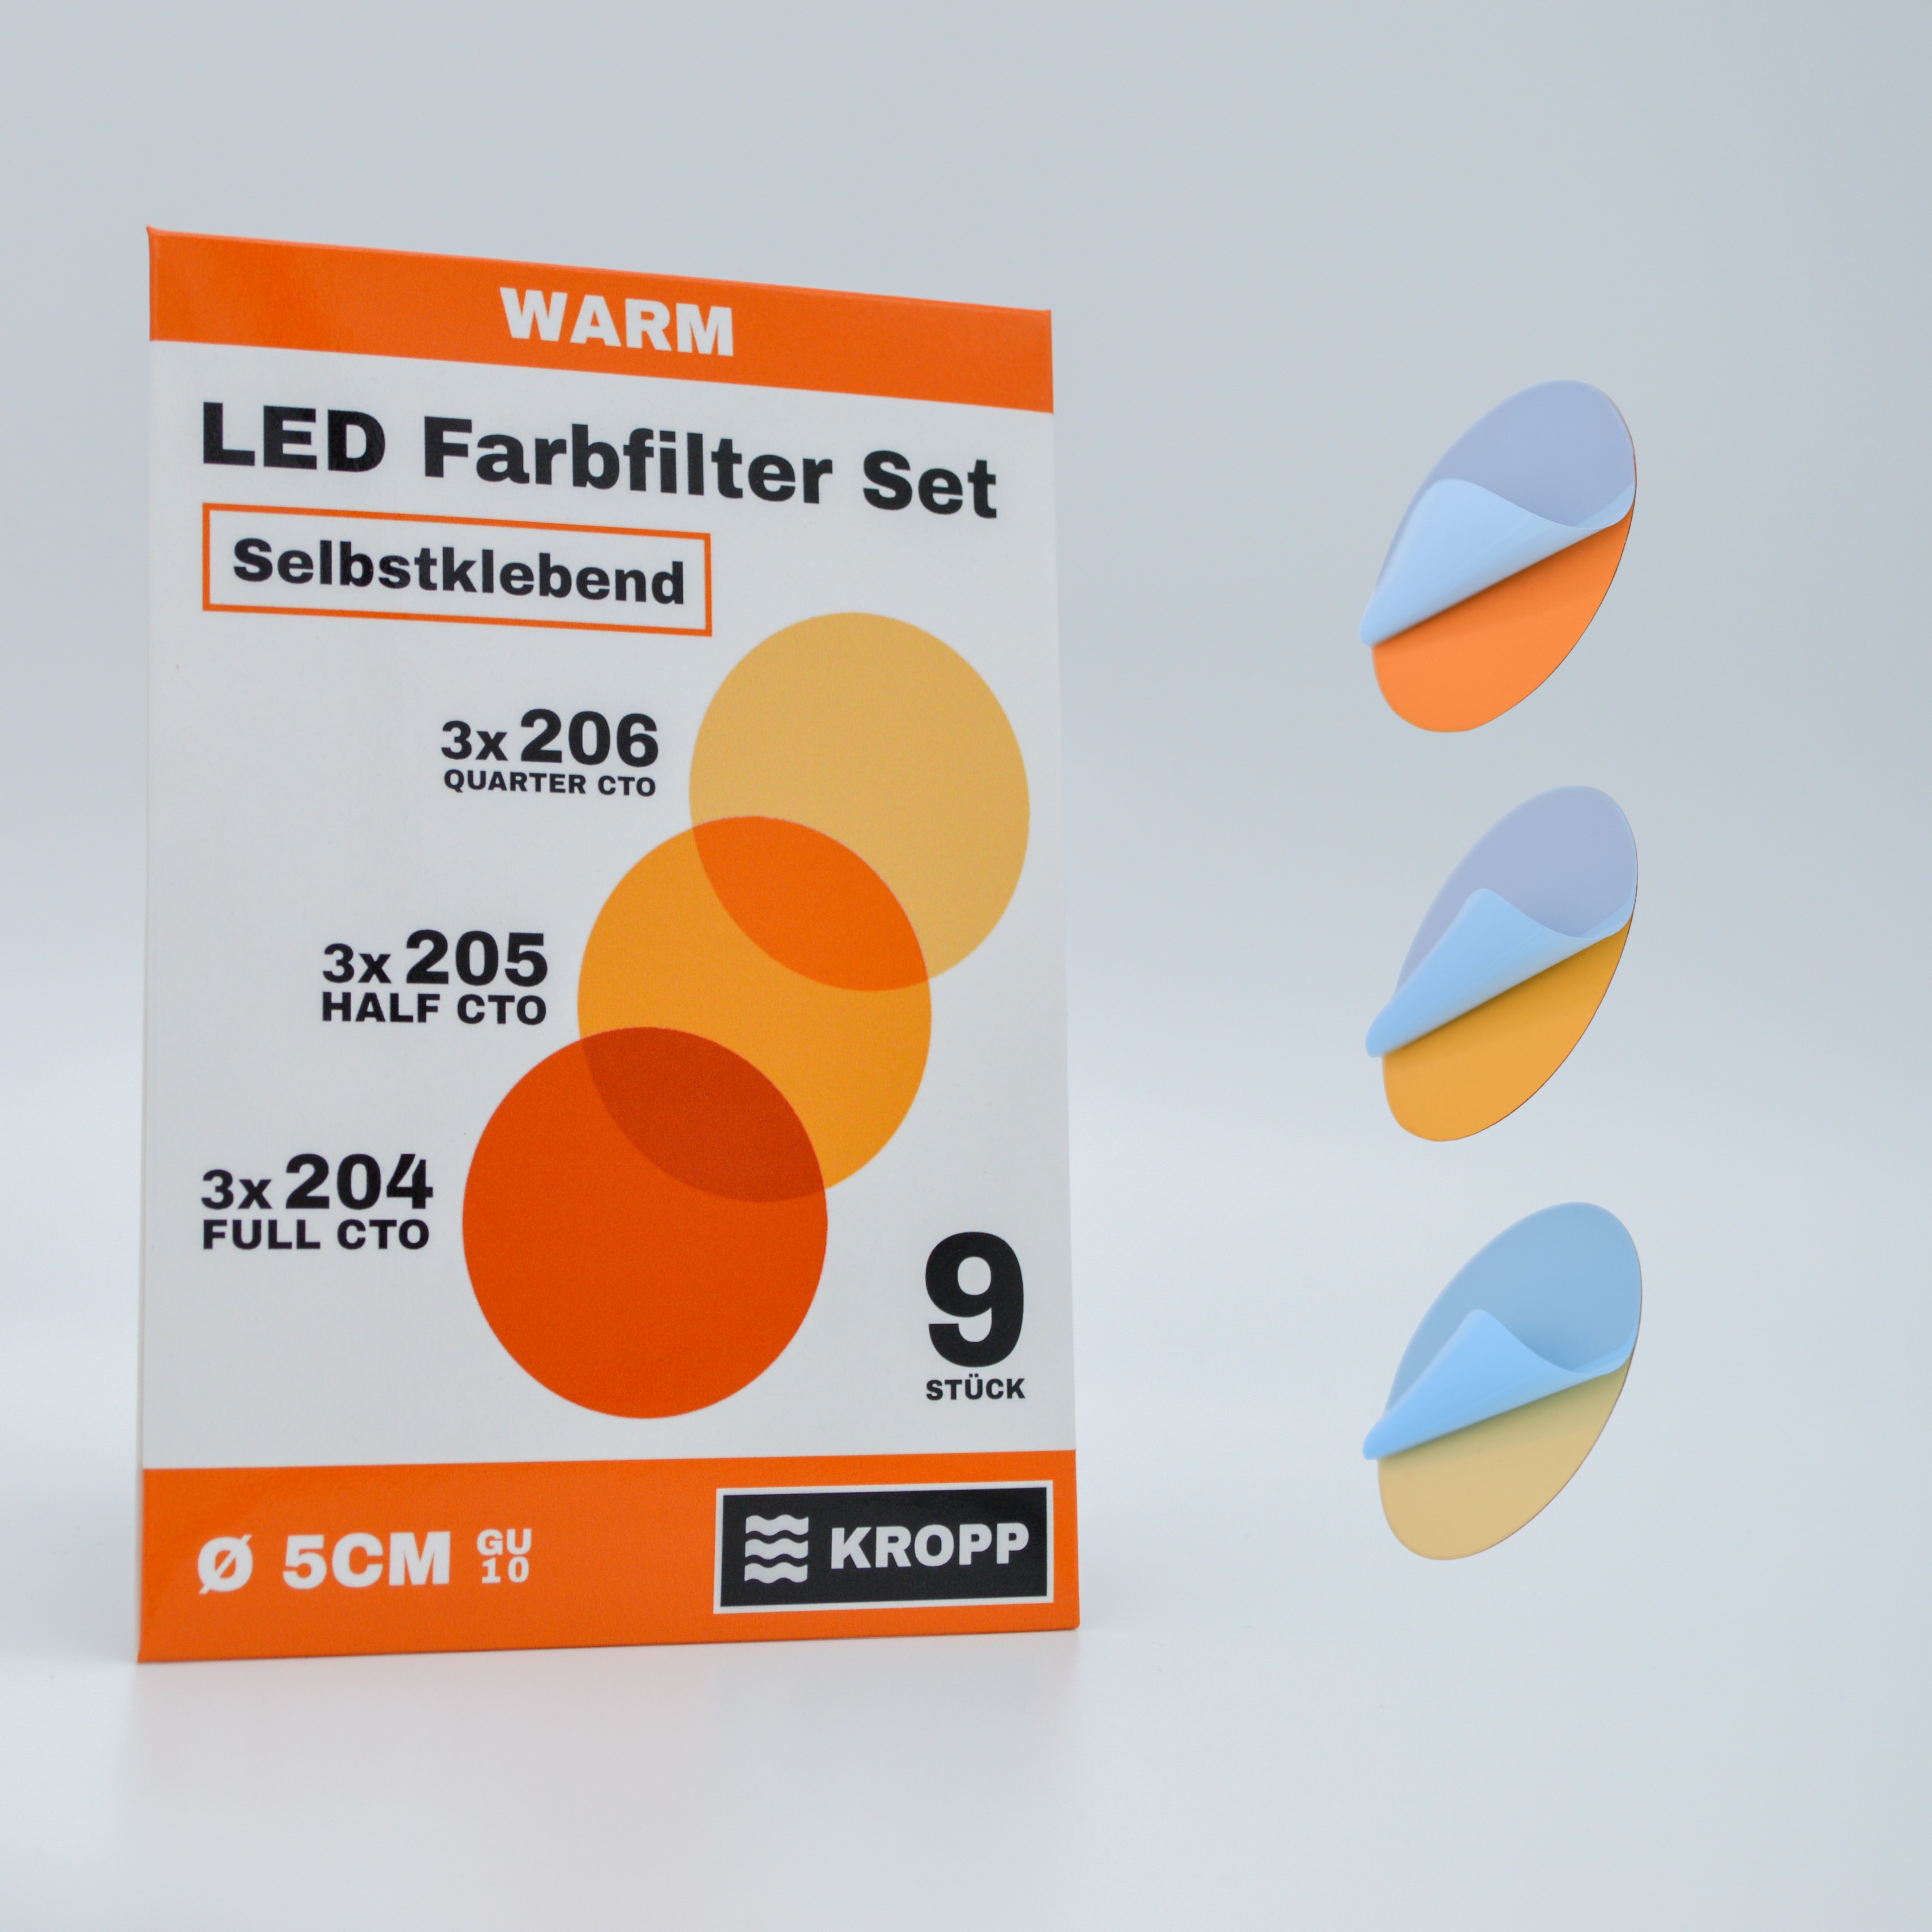 Films couleur autocollants pour lampes LED, ⌀5 CM découpe circulaire, blanc chaud filtres couleur pour la correction des couleurs, lumière du jour à lumière incandescente, set de filtres avec 9 pièces